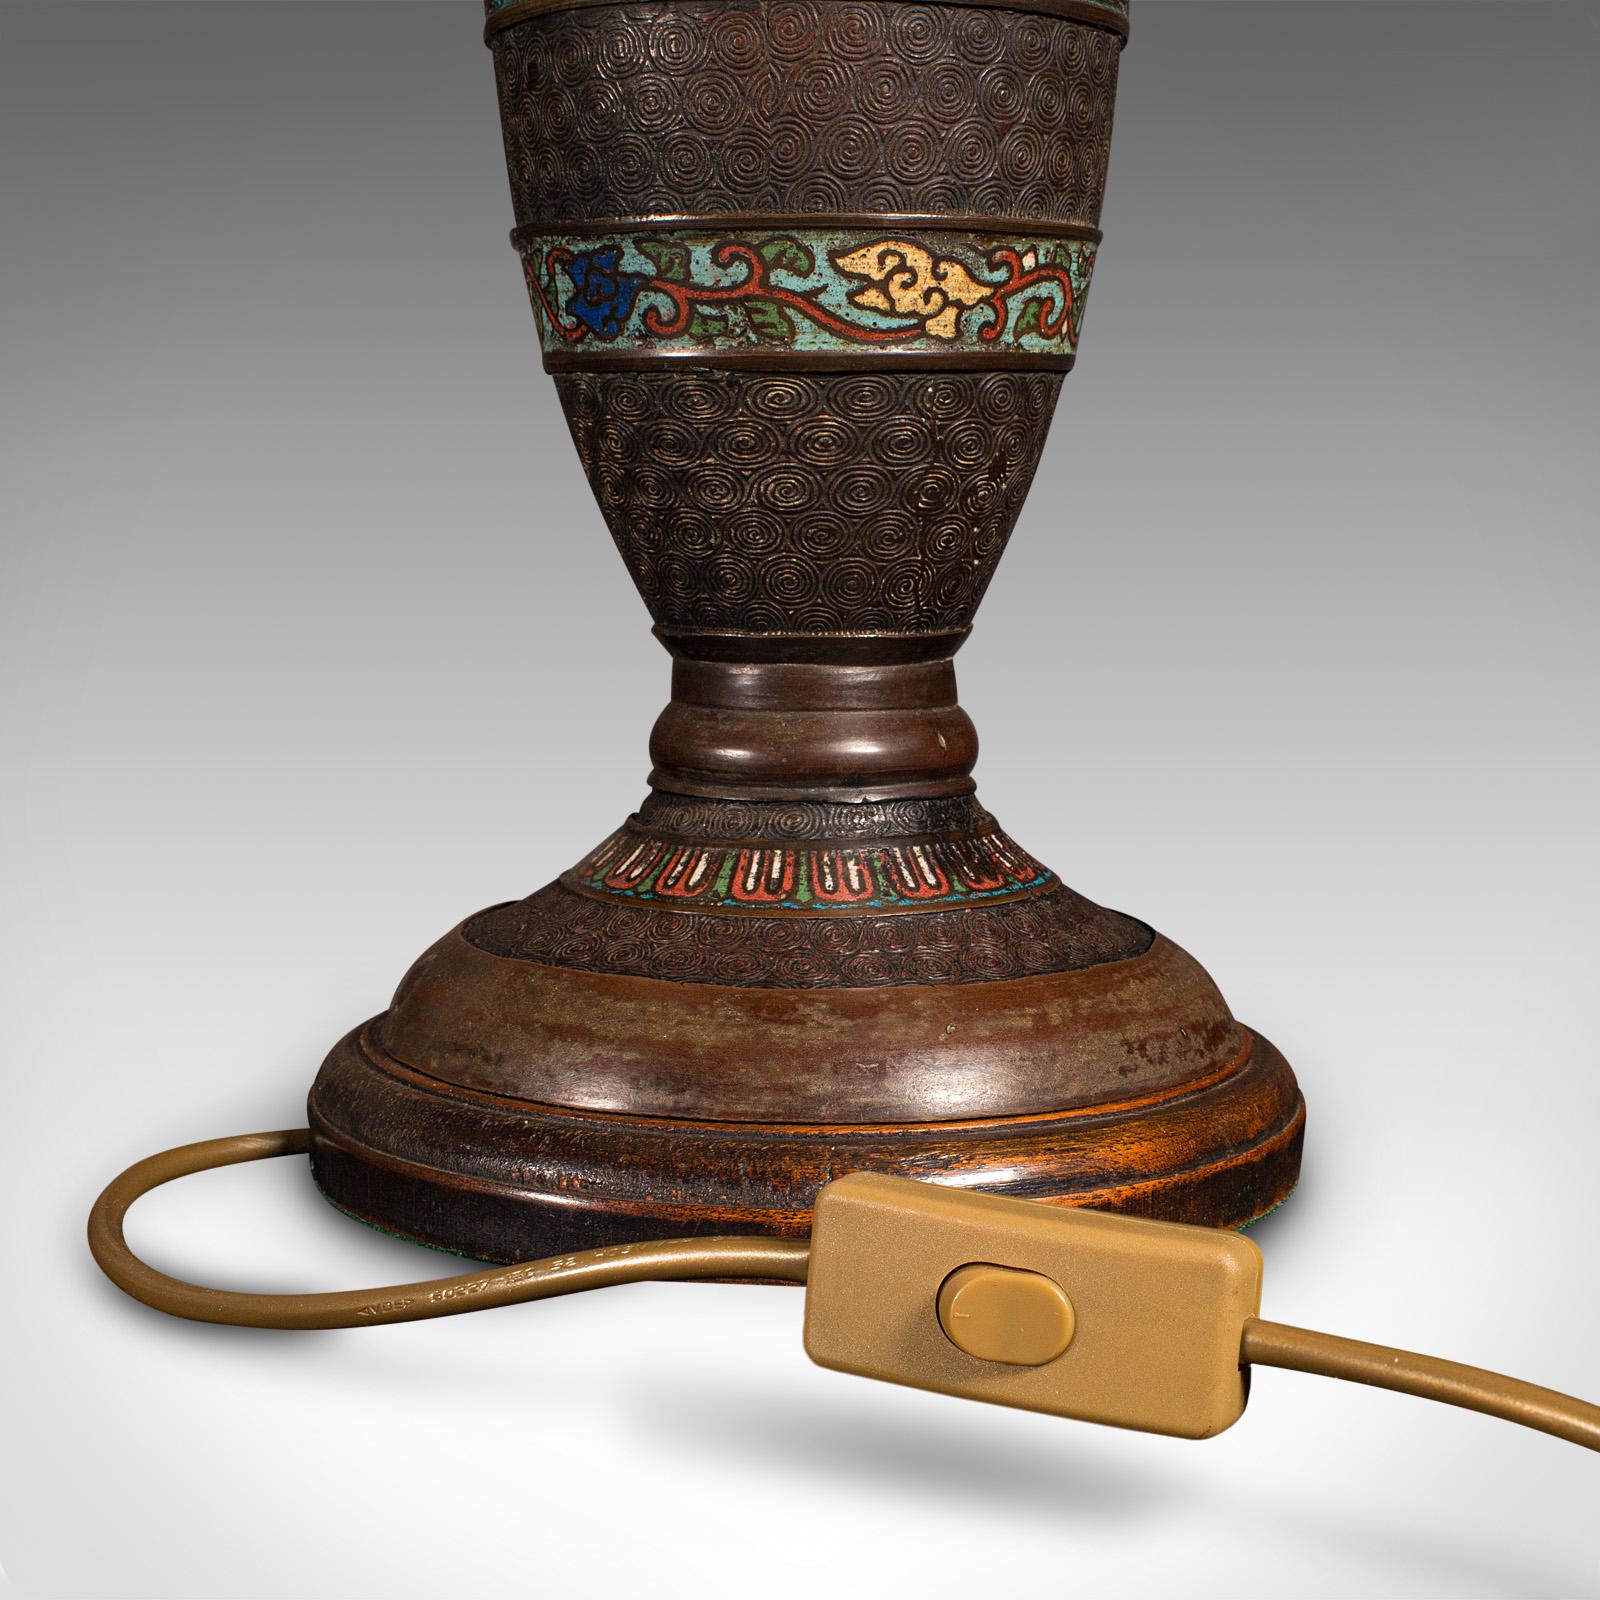 Antique Cloisonne Lamp, Japanese, Bronze, Table Light, Victorian, Meiji, C.1850 For Sale 6